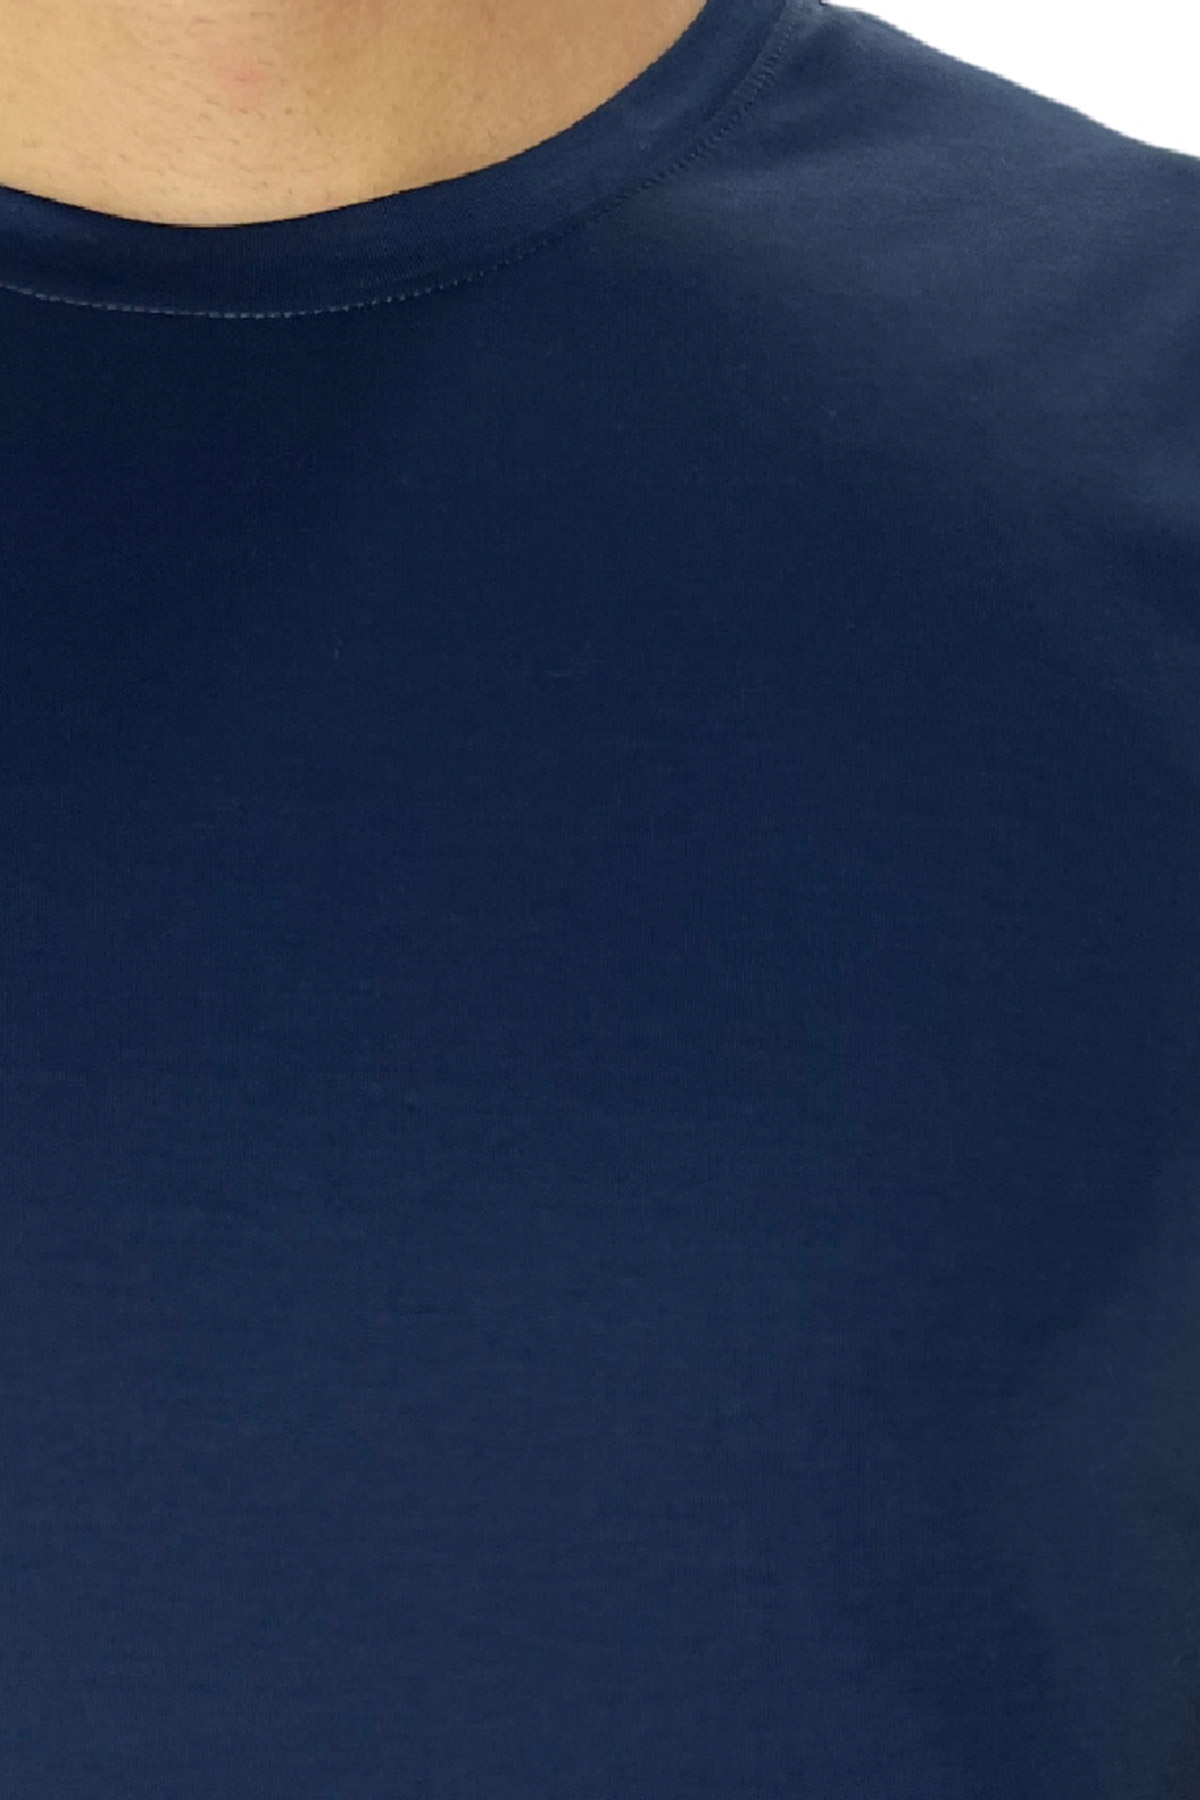 T-shirt da uomo filo di scozia Blu 100% cotone slim fit tinta unita Made In Italy